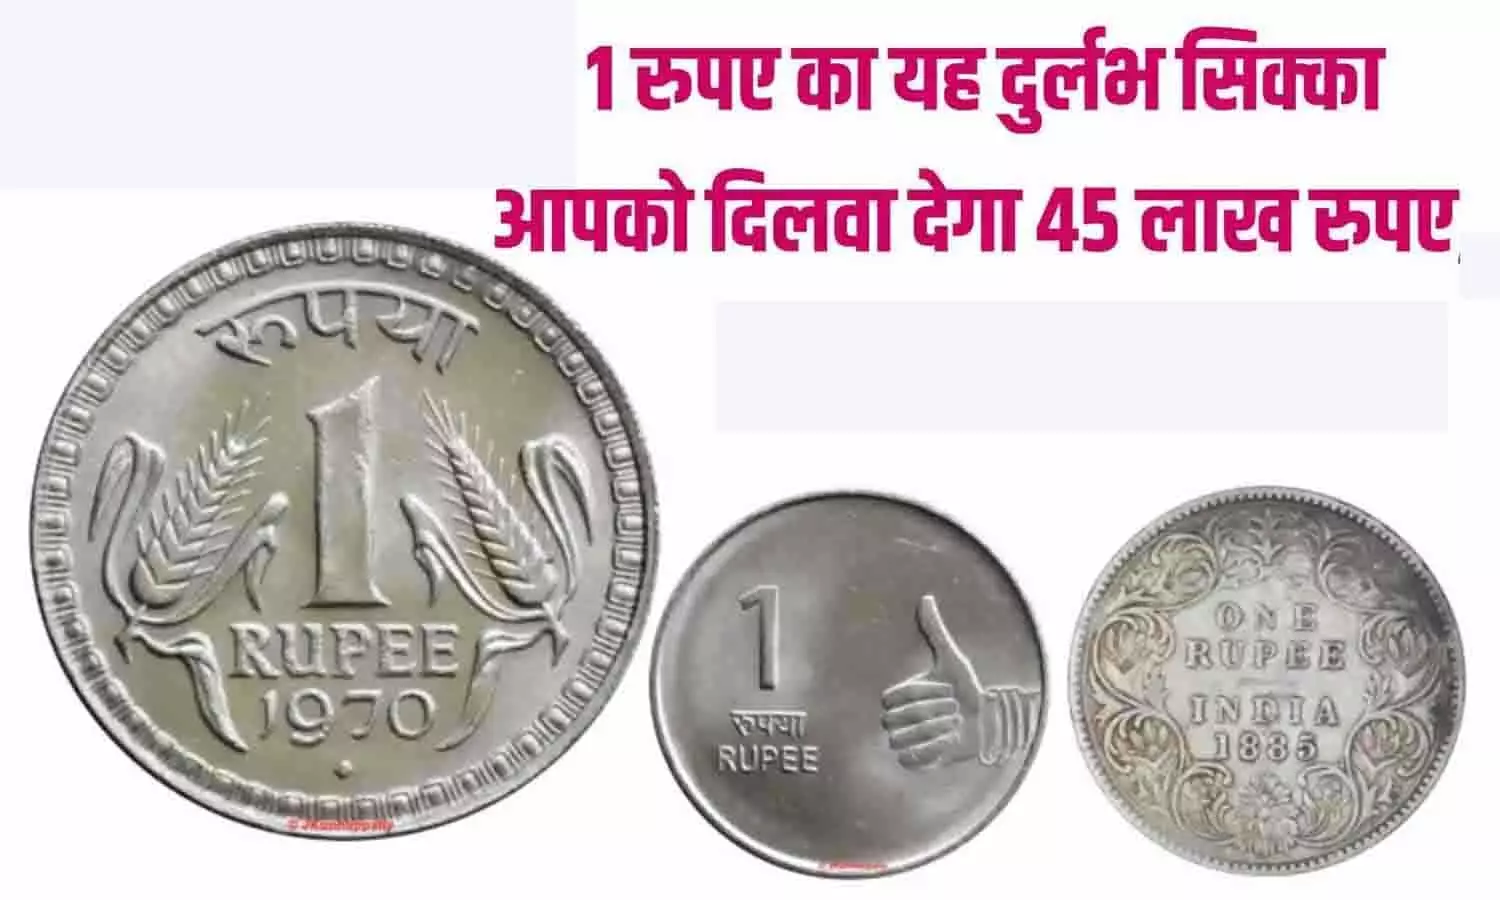 Sell Old Coin: 1 रुपए का यह दुर्लभ सिक्का आपको दिलवा देगा 45 लाख रुपए, फटाफट इस Online Website में बेचे